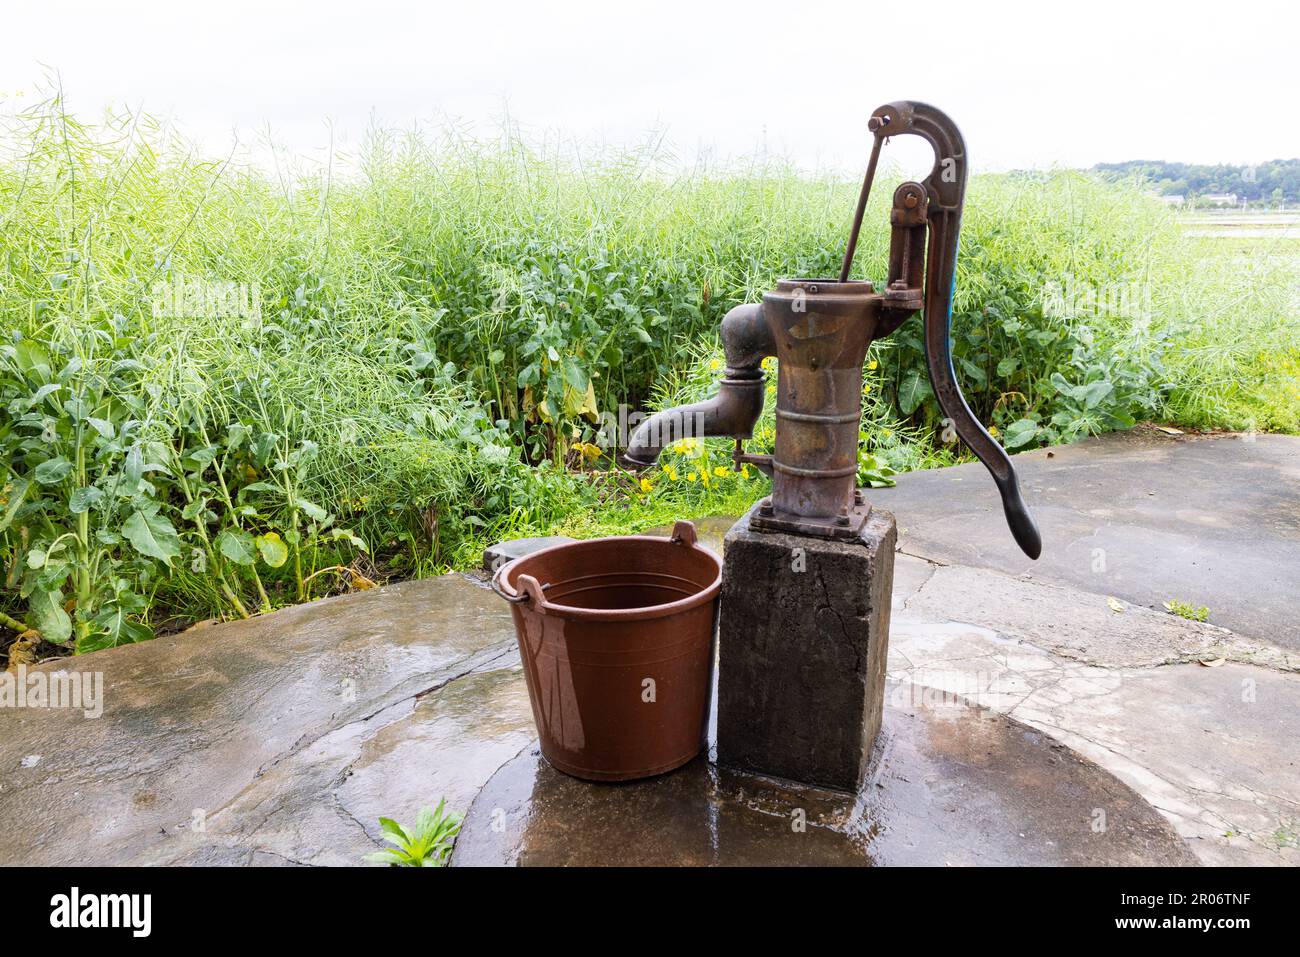 Menschen, die den Eimer mit Wasser aus der Handpumpe füllen, graben von  Hand in flachen Grundwasserleitern in Dörfern auf dem Land in China.  Rapssamen-Hülsen, Stiele, o Stockfotografie - Alamy